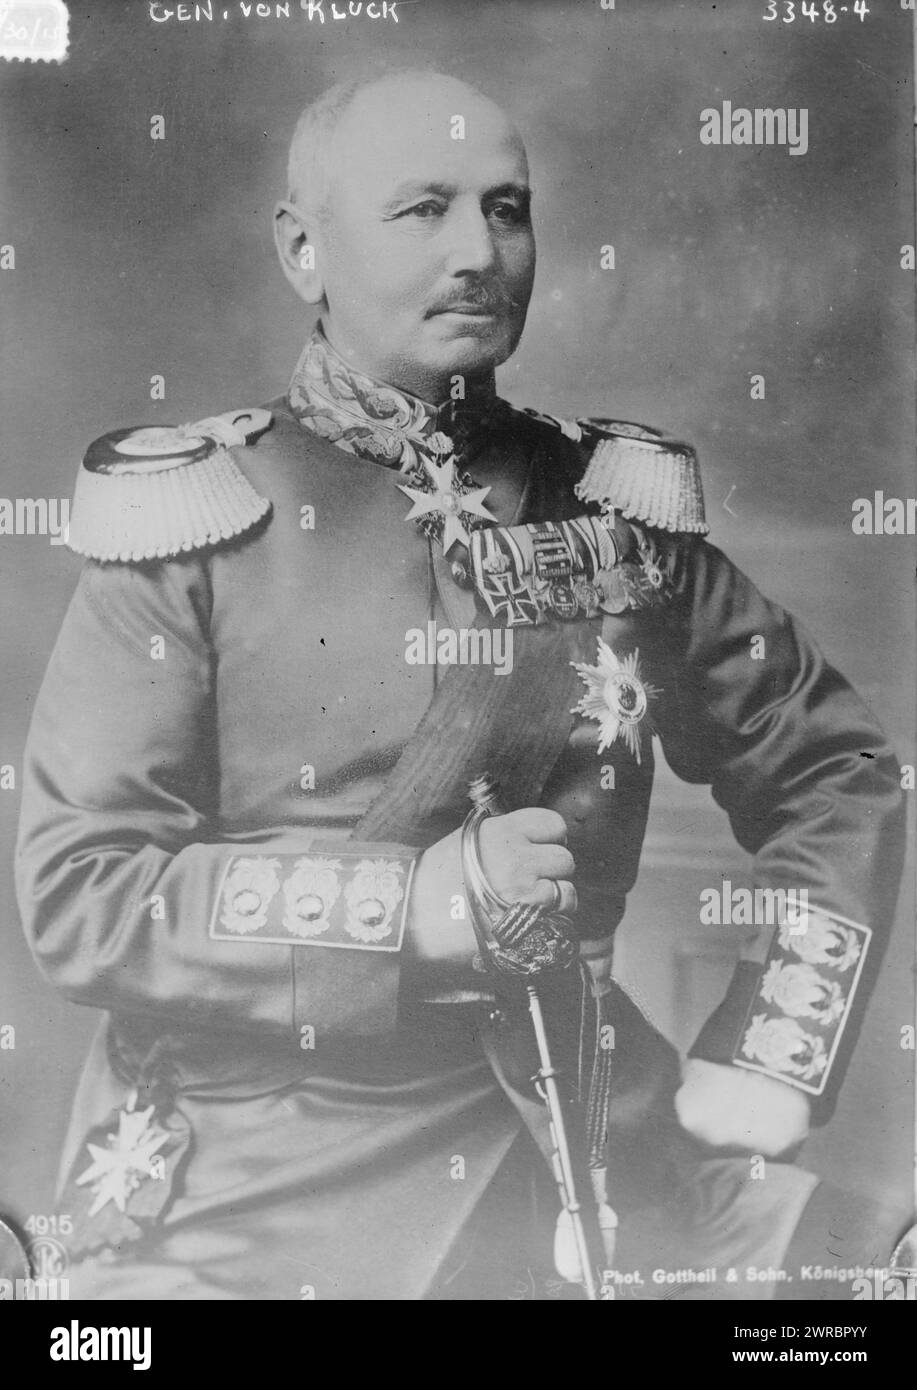 Gen. von Kluck, Photograph shows Alexander Heinrich Rudolph von Kluck (1846-1934), a German general who served during World War I., 1915 March 30, Glass negatives, 1 negative: glass Stock Photo